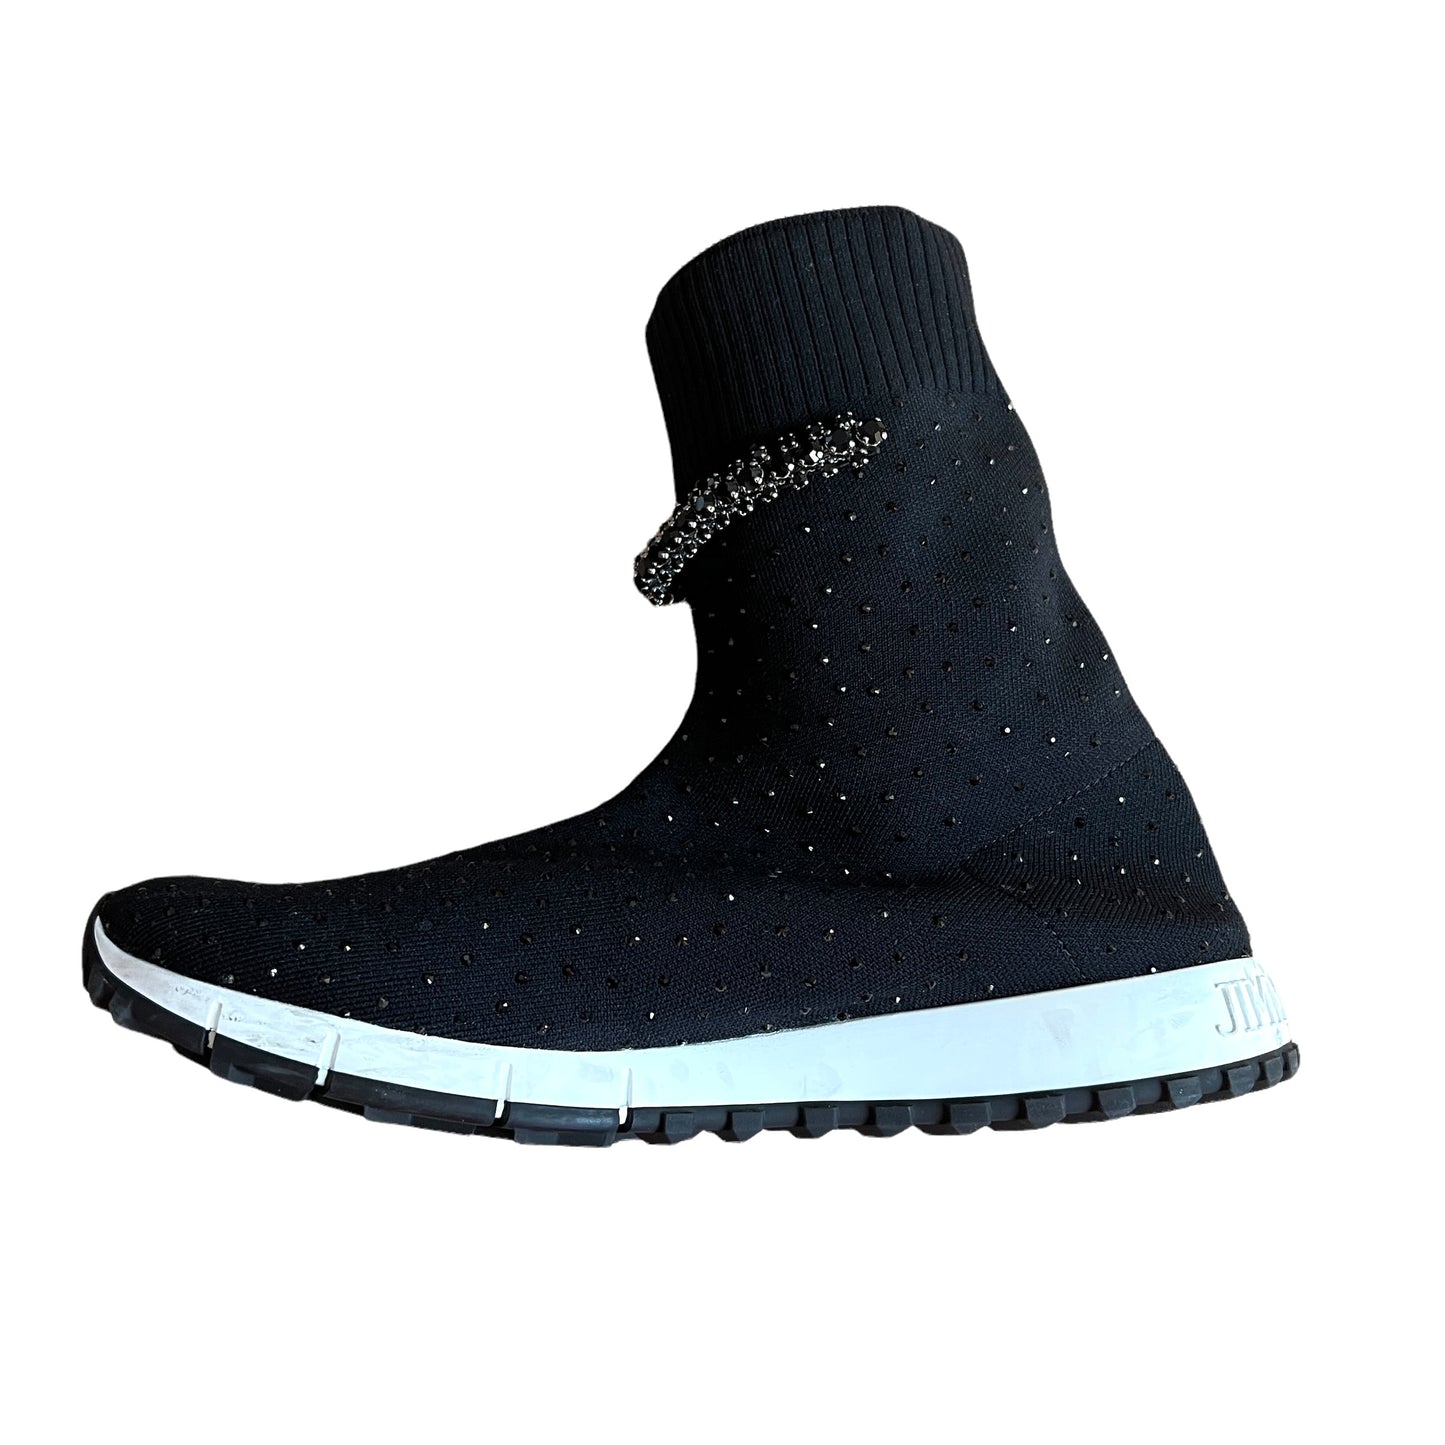 Black Sock Sneakers - 10